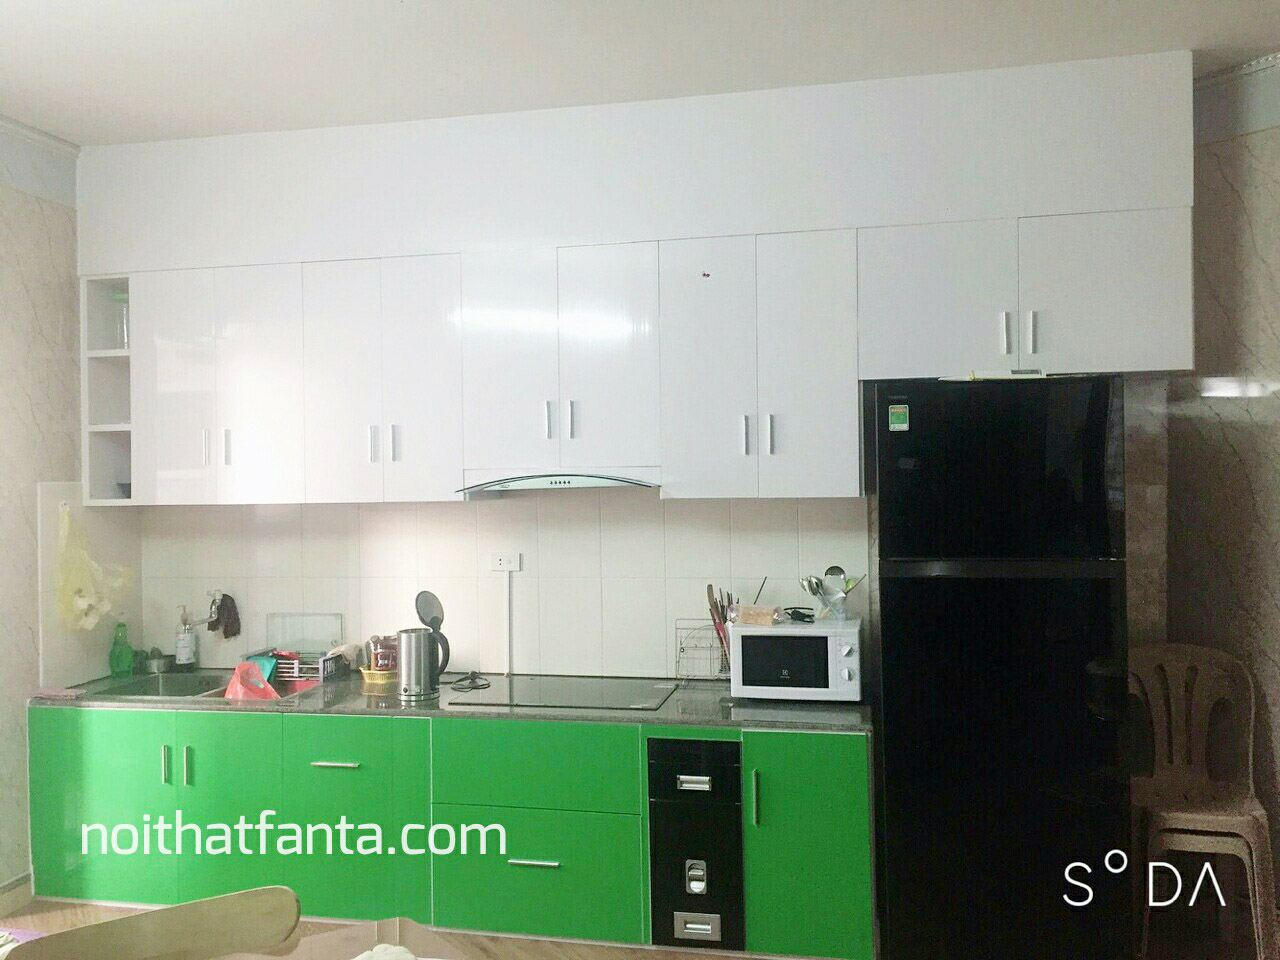 Một số hình ảnh Nội thất Fanta Lắp đặt Tủ Bếp nhựa Đài Loan cao cấp tại TP Vinh